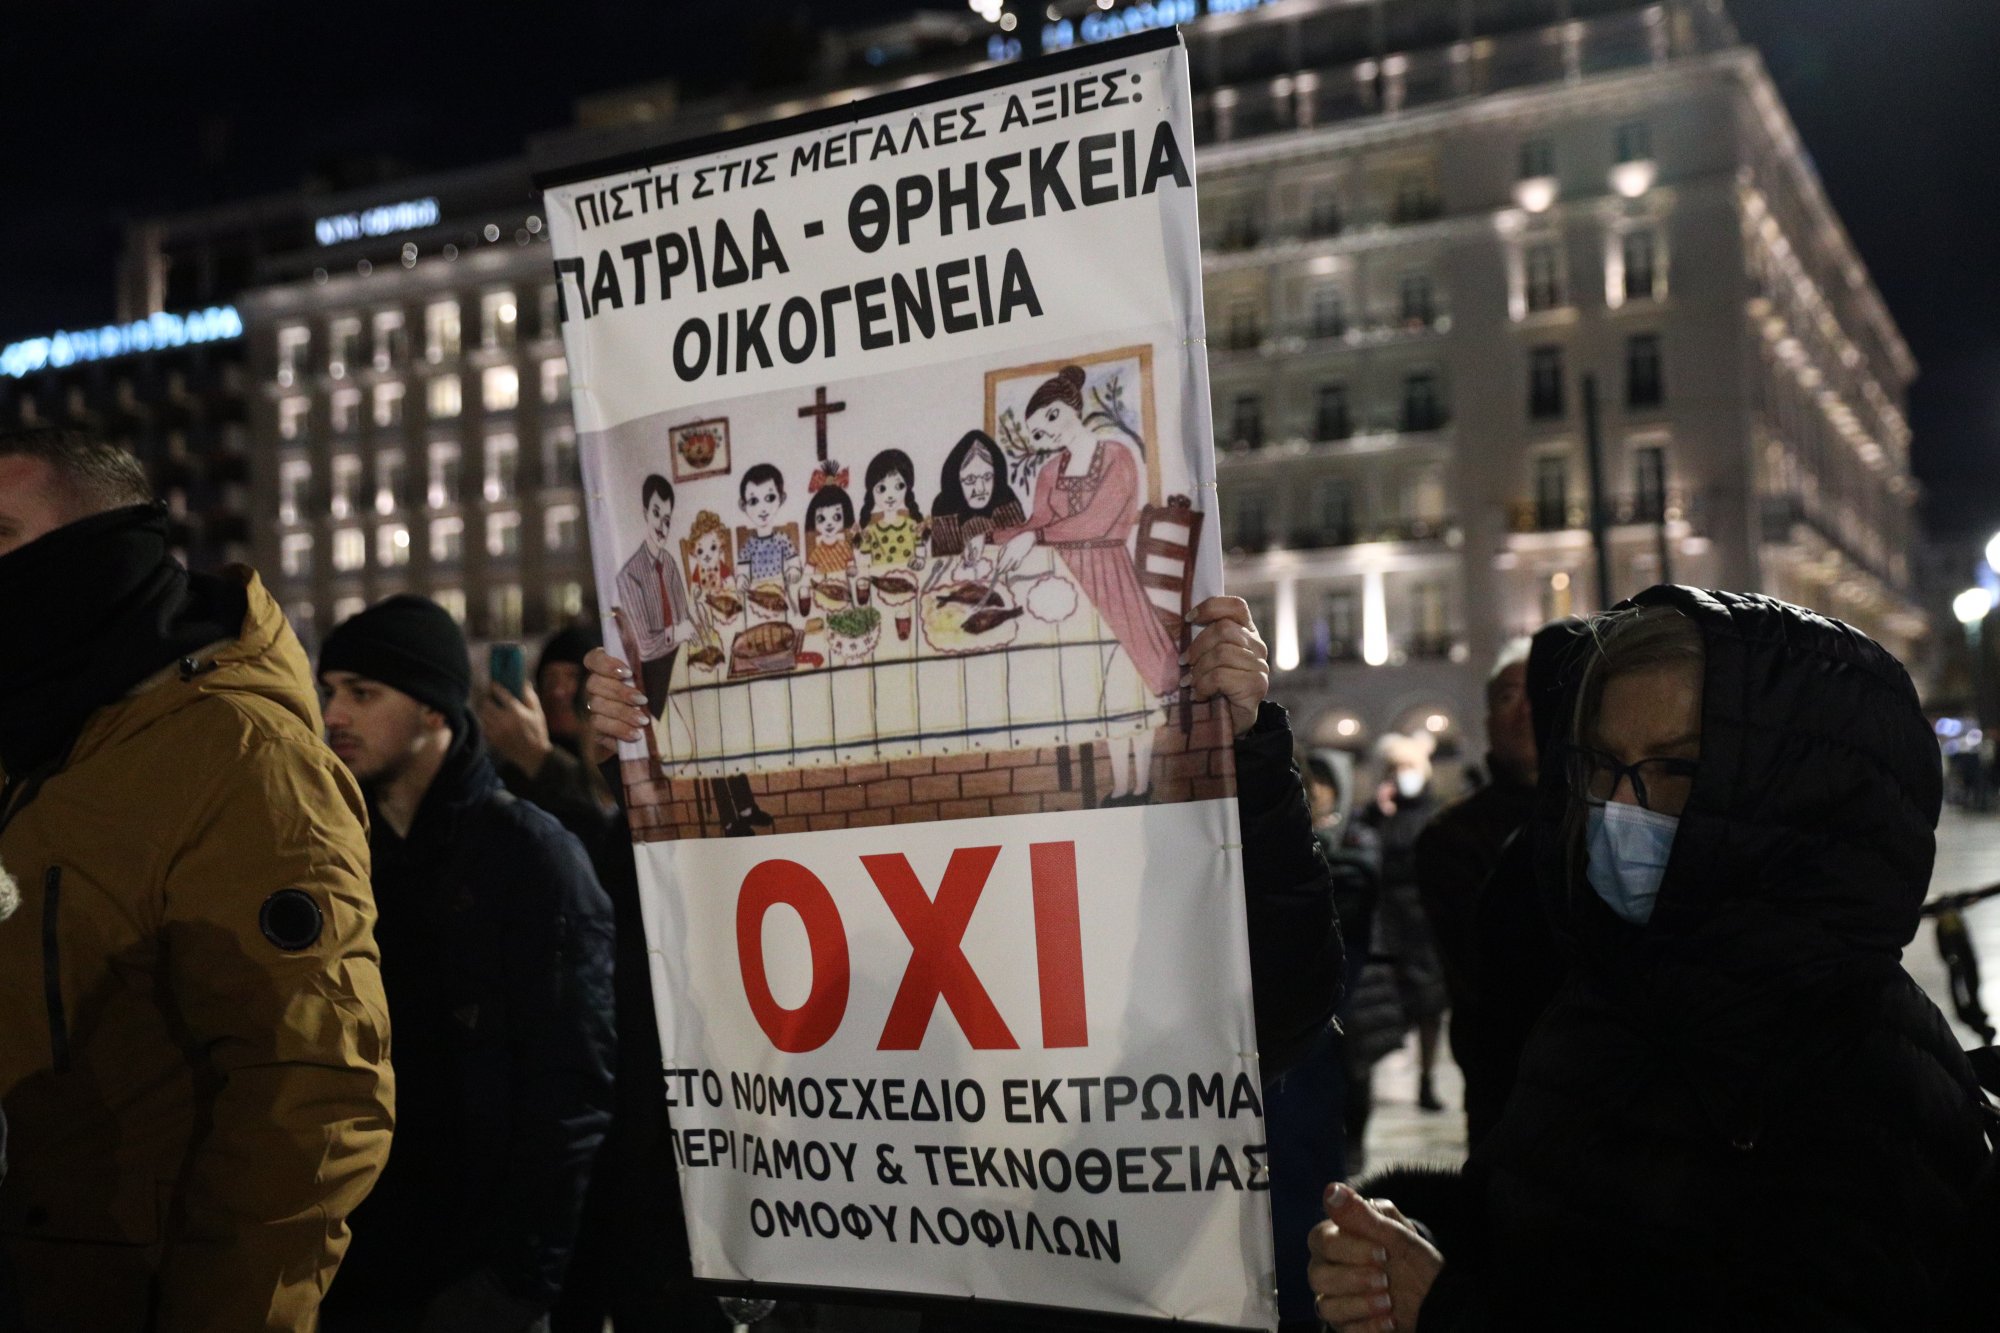 Νομοσχέδιο για τα ομόφυλα ζευγάρια: Αντιδραστικές συγκεντρώσεις σε Σύνταγμα  και Θεσσαλονίκη | in.gr